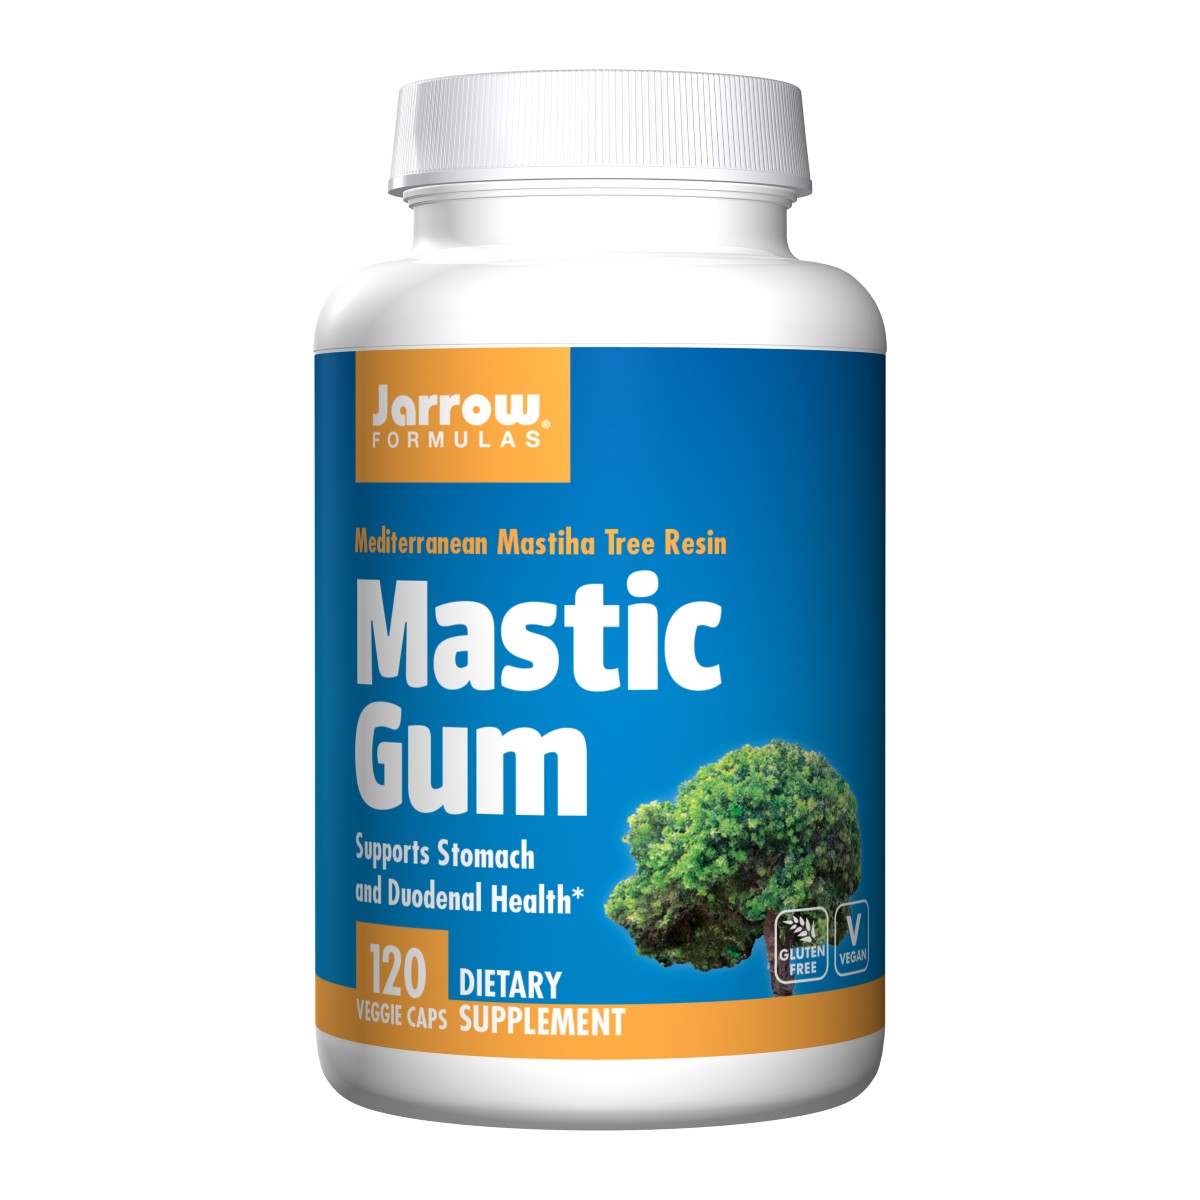 Mastic Gum - Jarrow Formulas